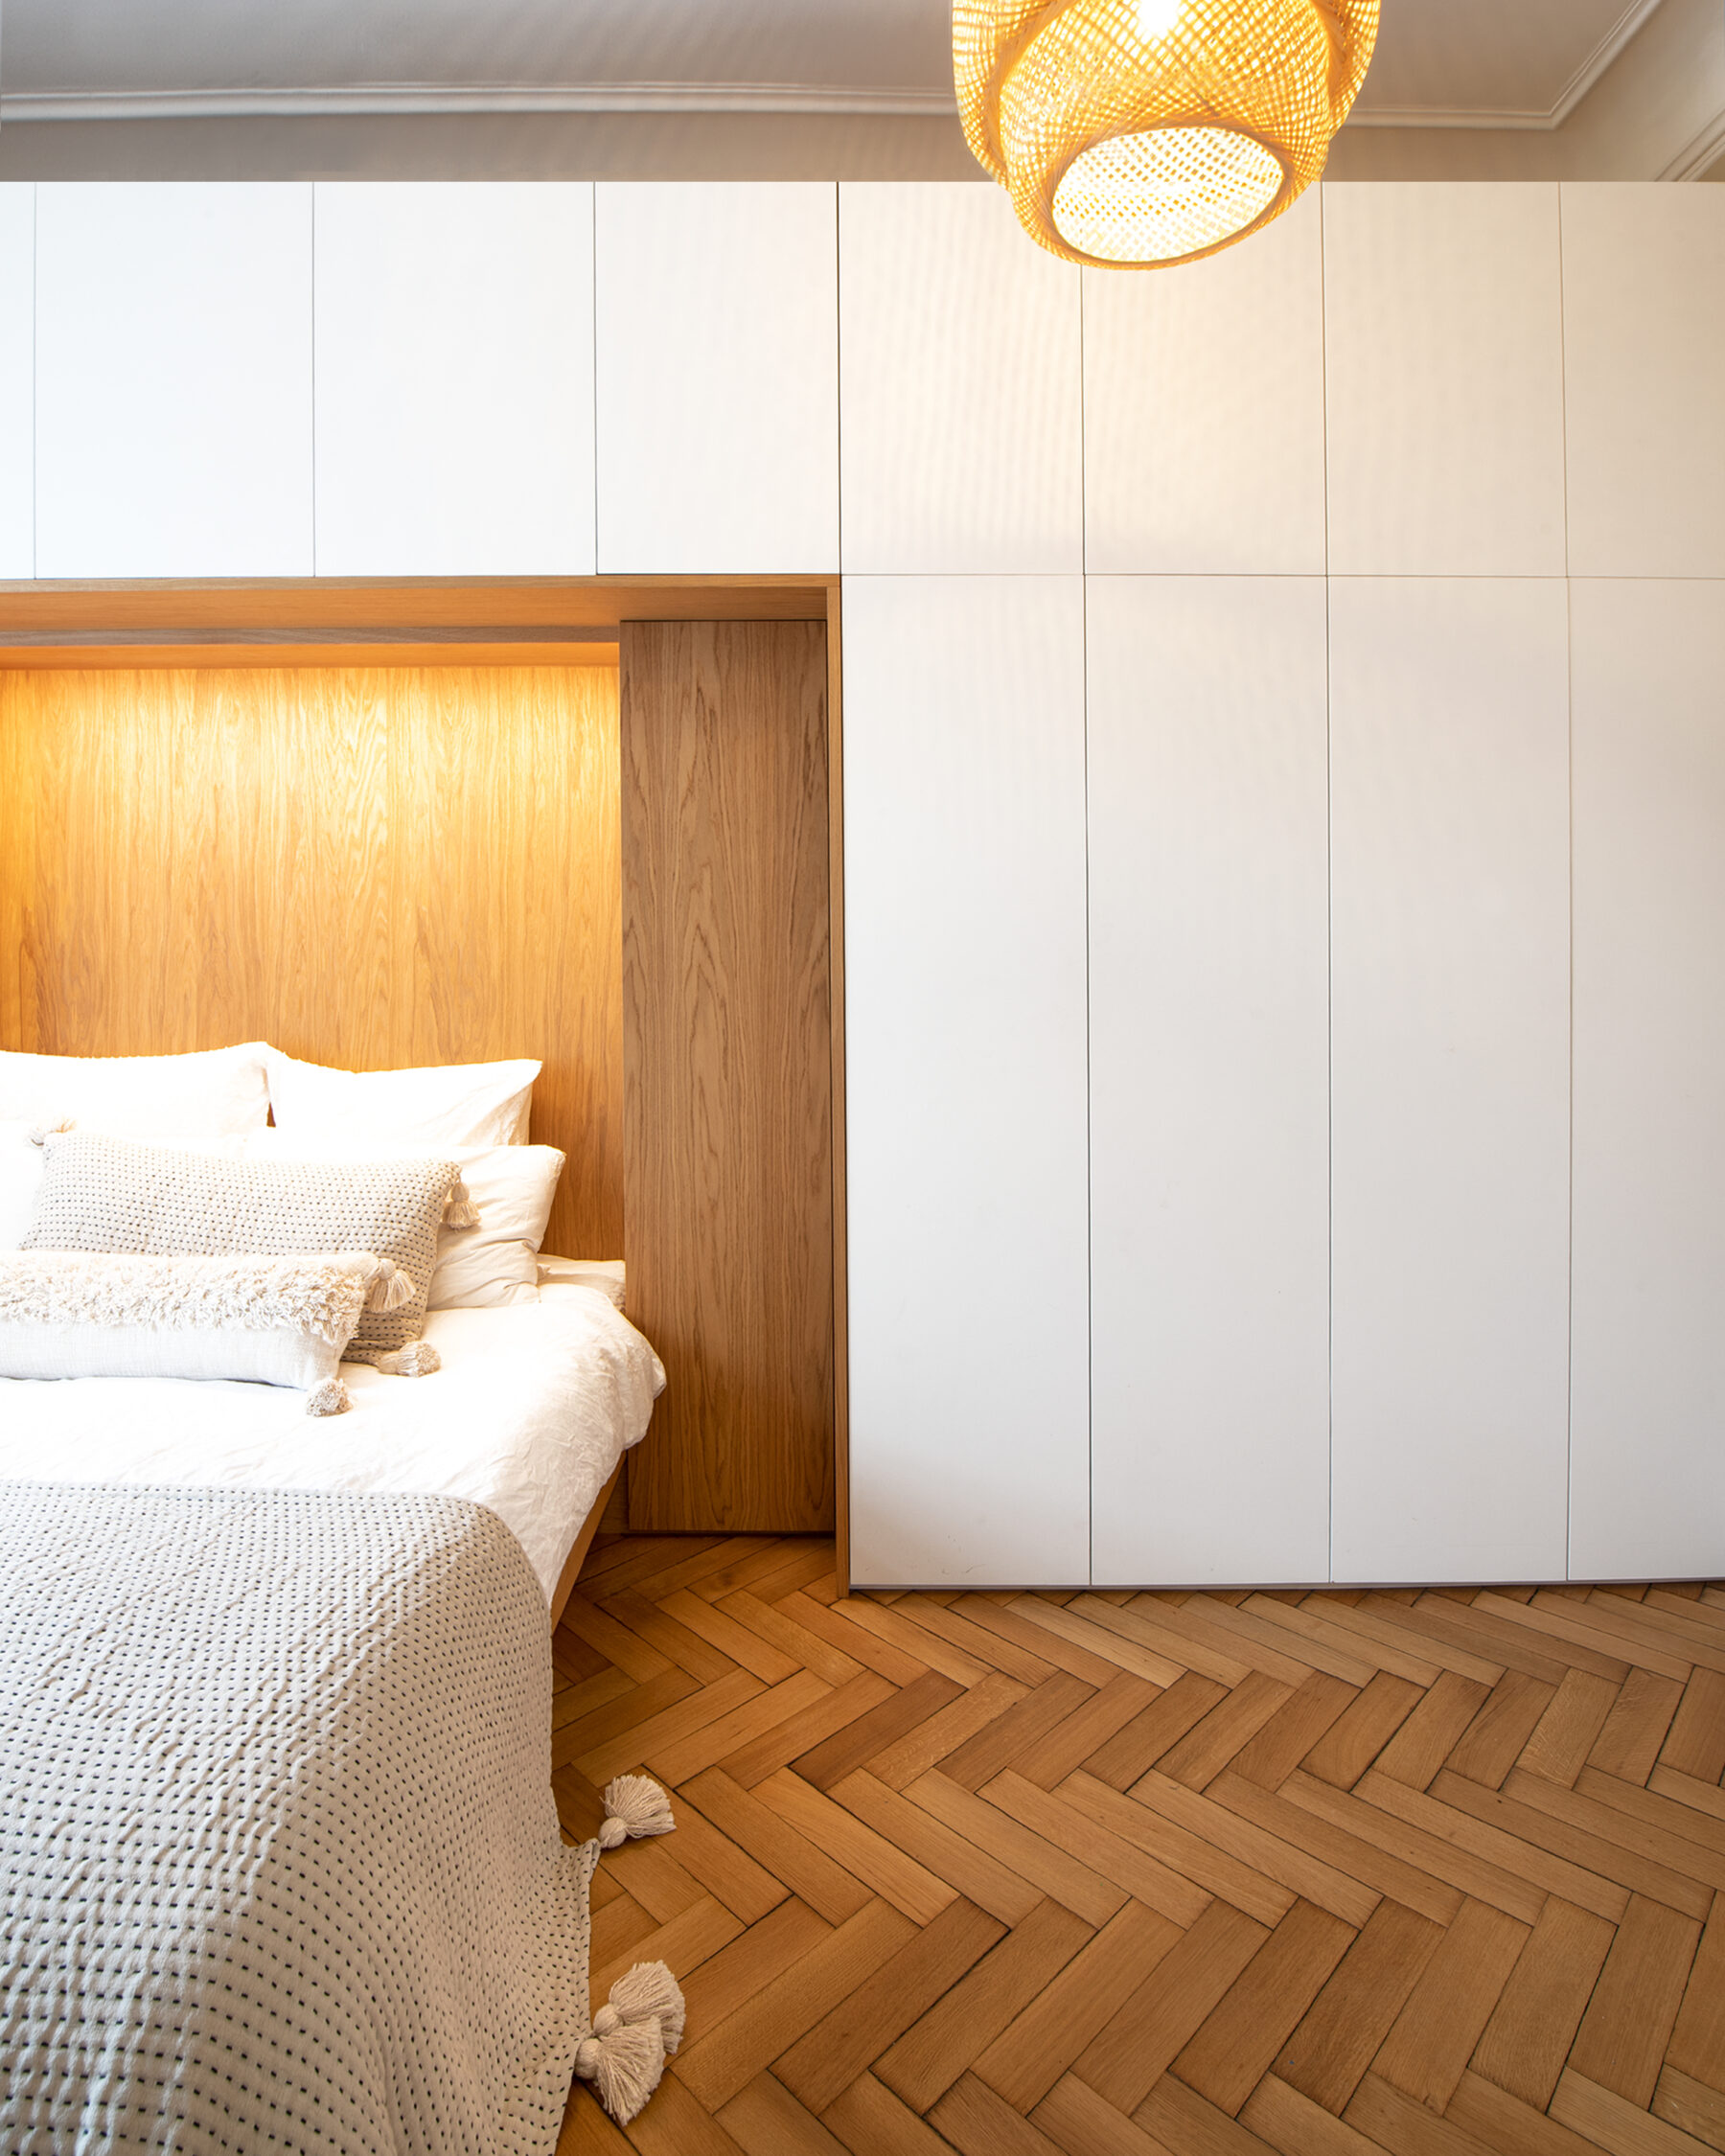 Moderne Schrankwand mit integriertem Bett: Eiche kontrastiert mit den hellen Flächen der Schranktüren